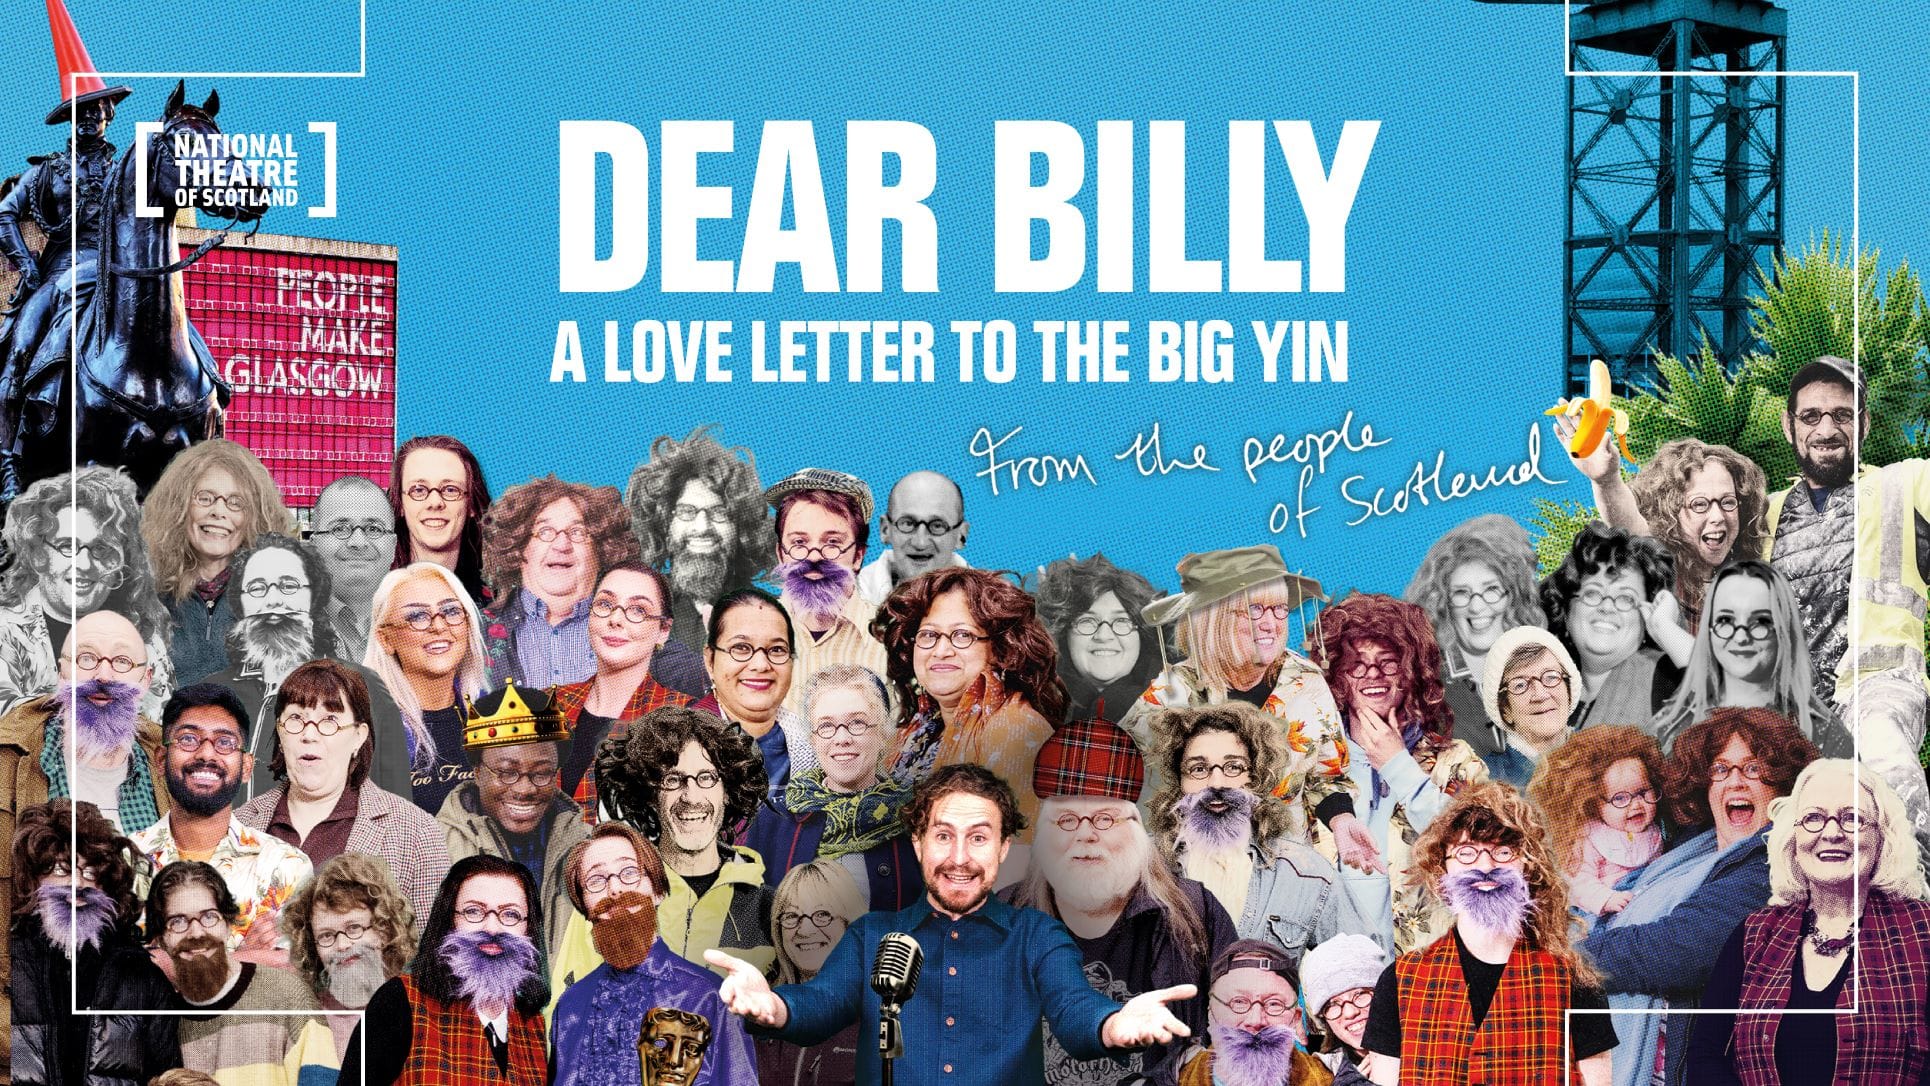 Dear Billy